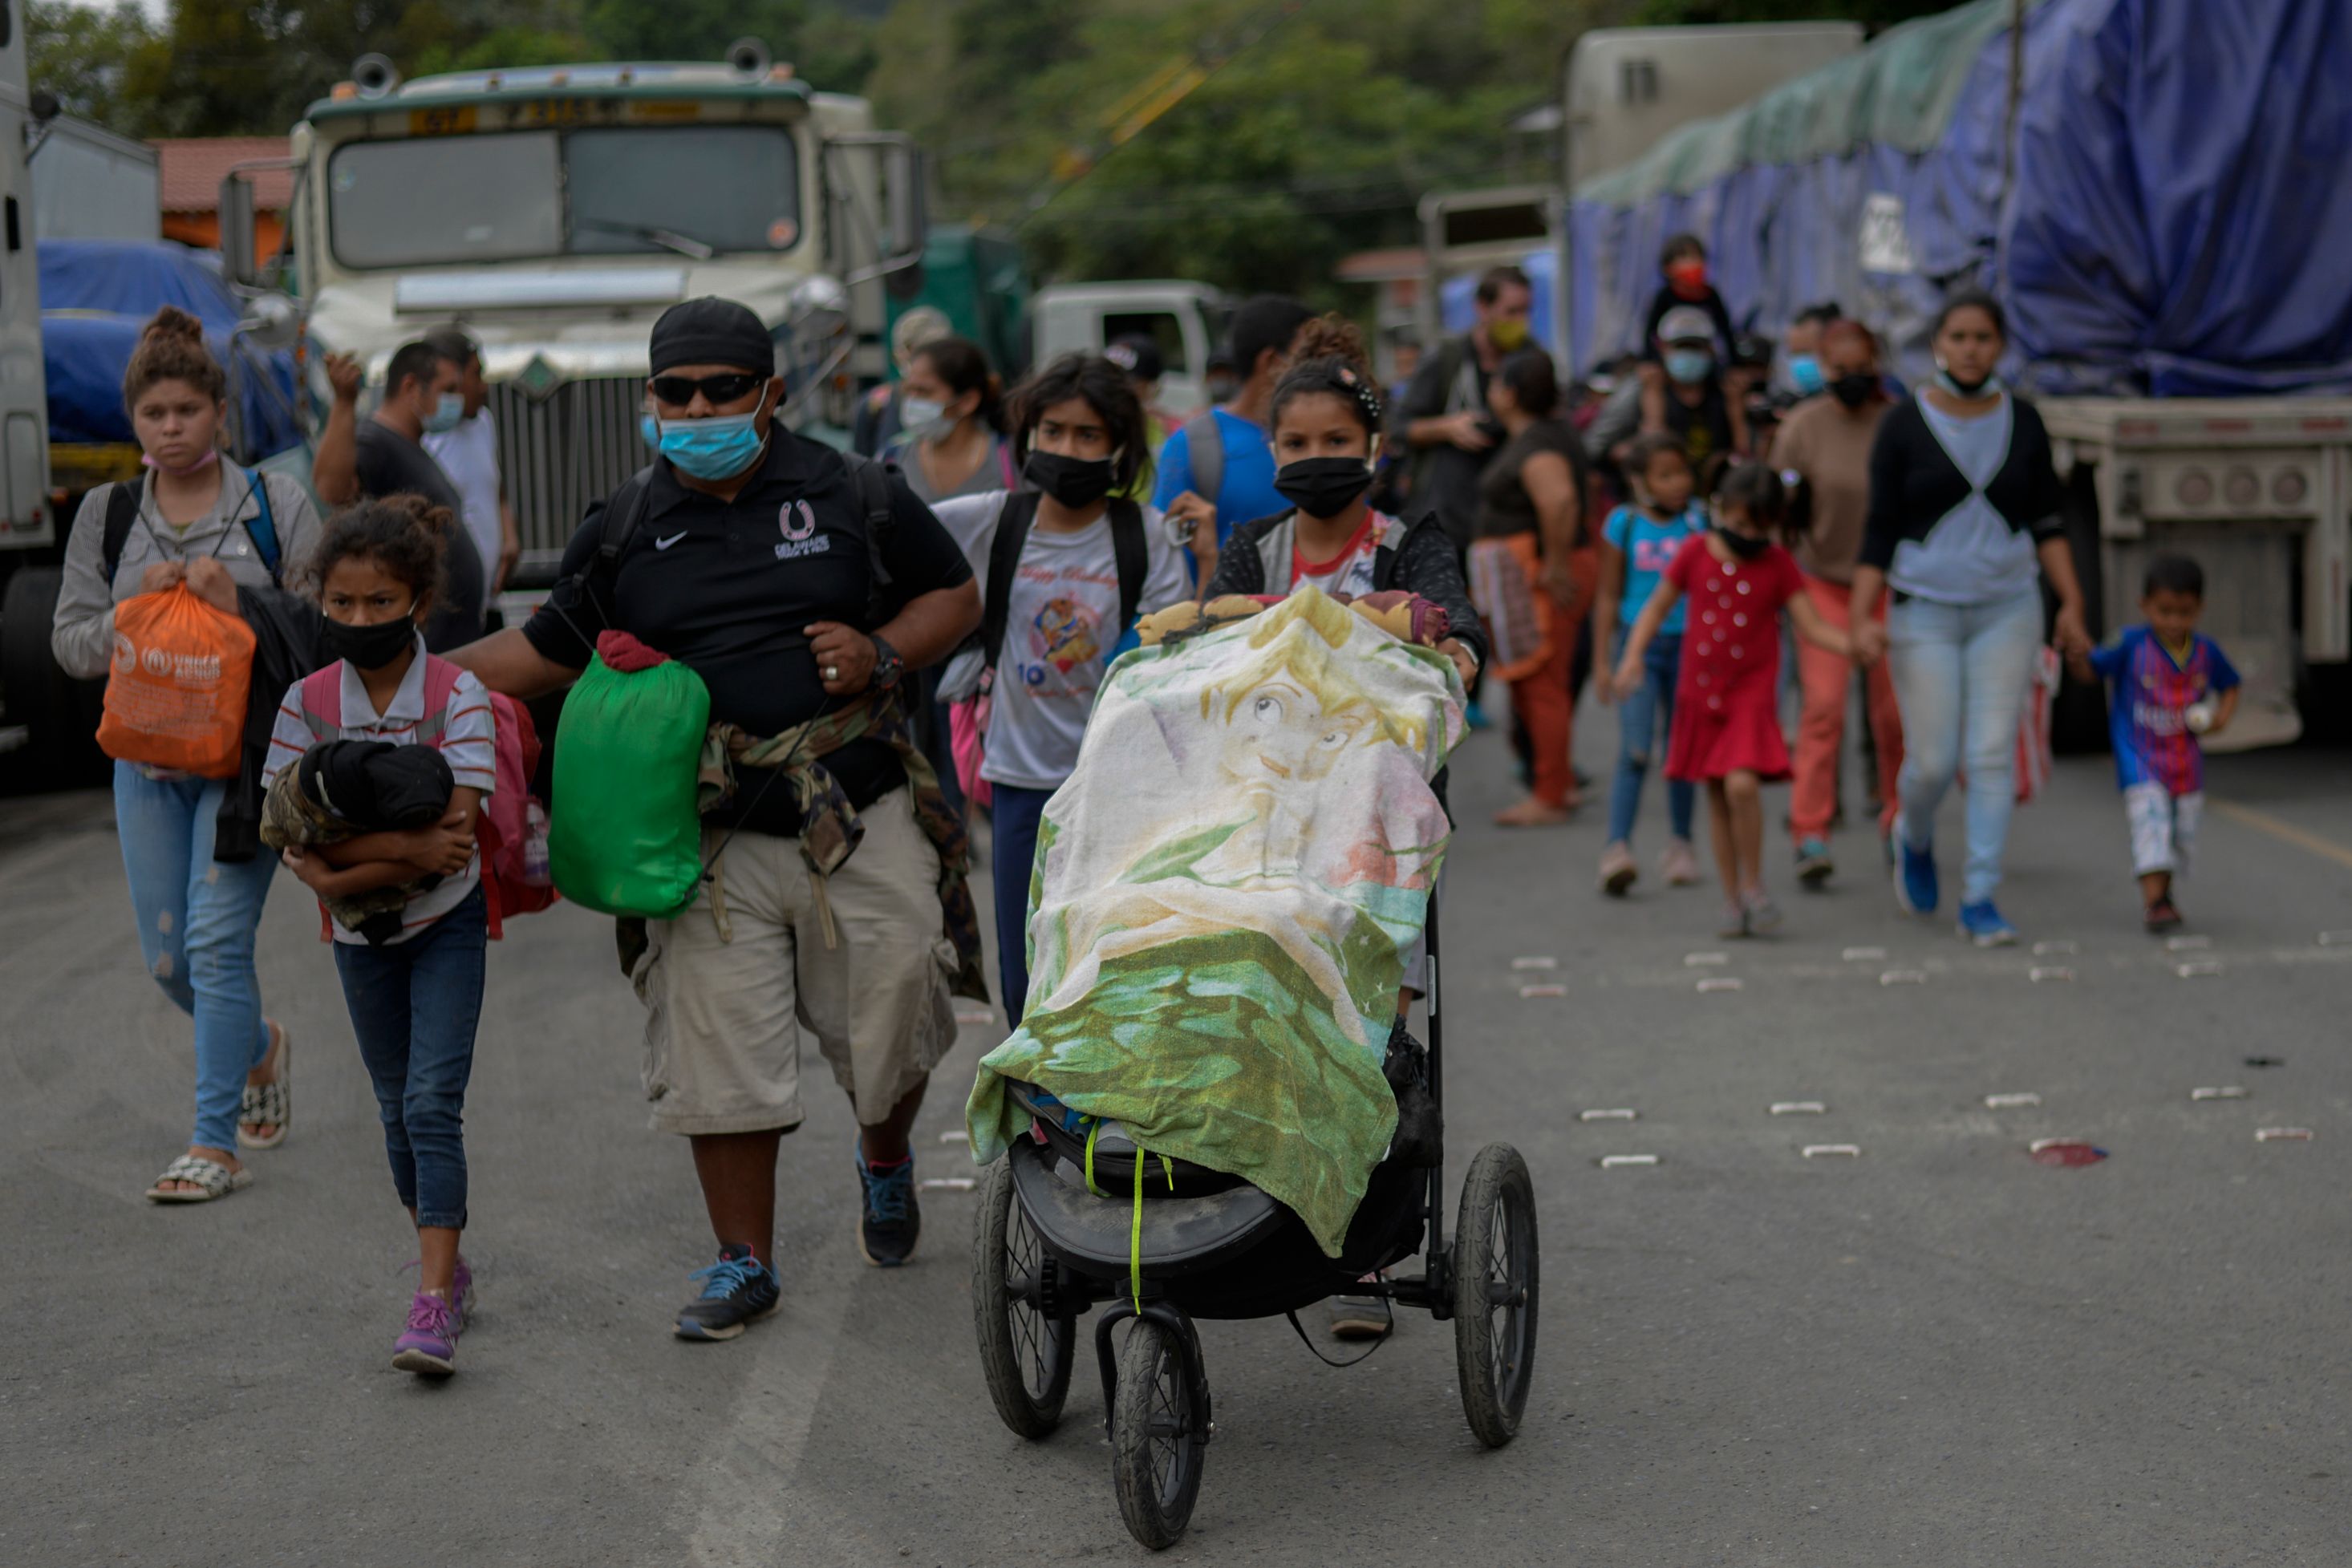 Miles de migrantes hondureños intentan llegar a Estados Unidos, y para llegar cruzan por Guatemala. (Foto Prensa Libre: AFP)